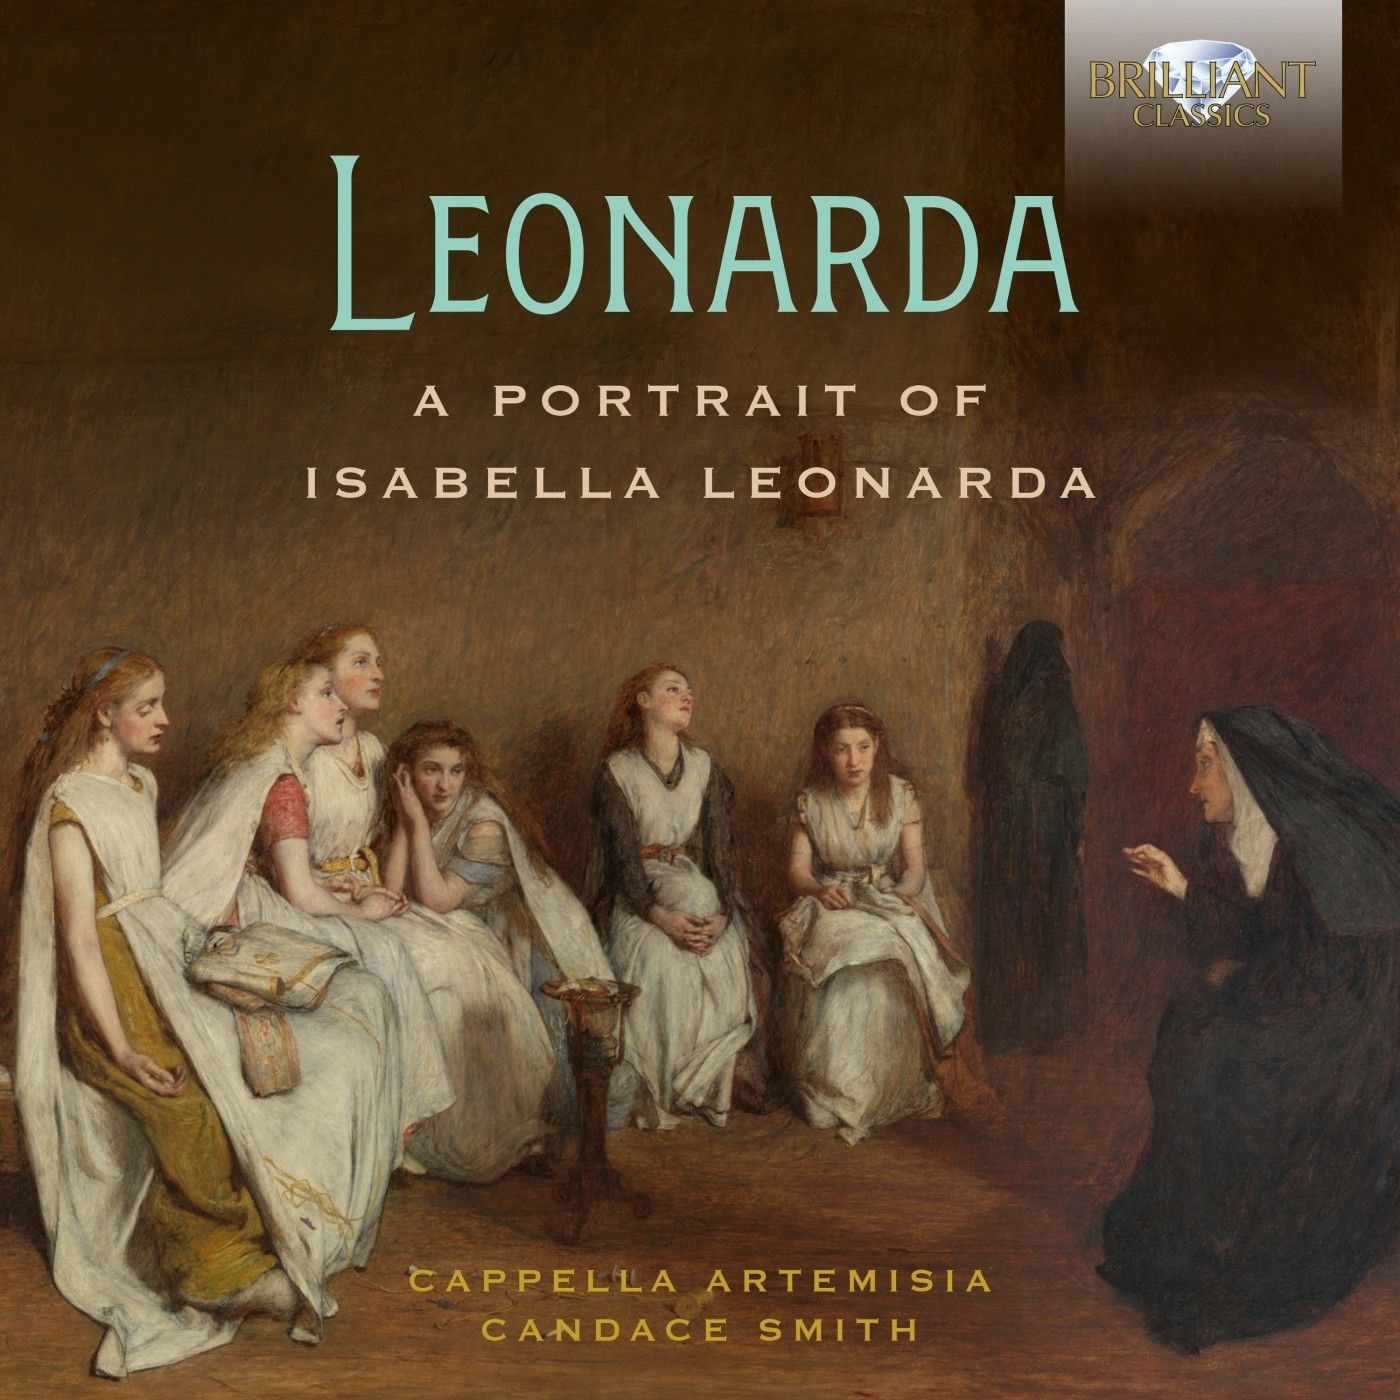 Cappella Artemisia, Candace Smith - Leonarda: A Portrait of Isabella Leonarda (2022) [FLAC 24bit/44,1kHz] Download